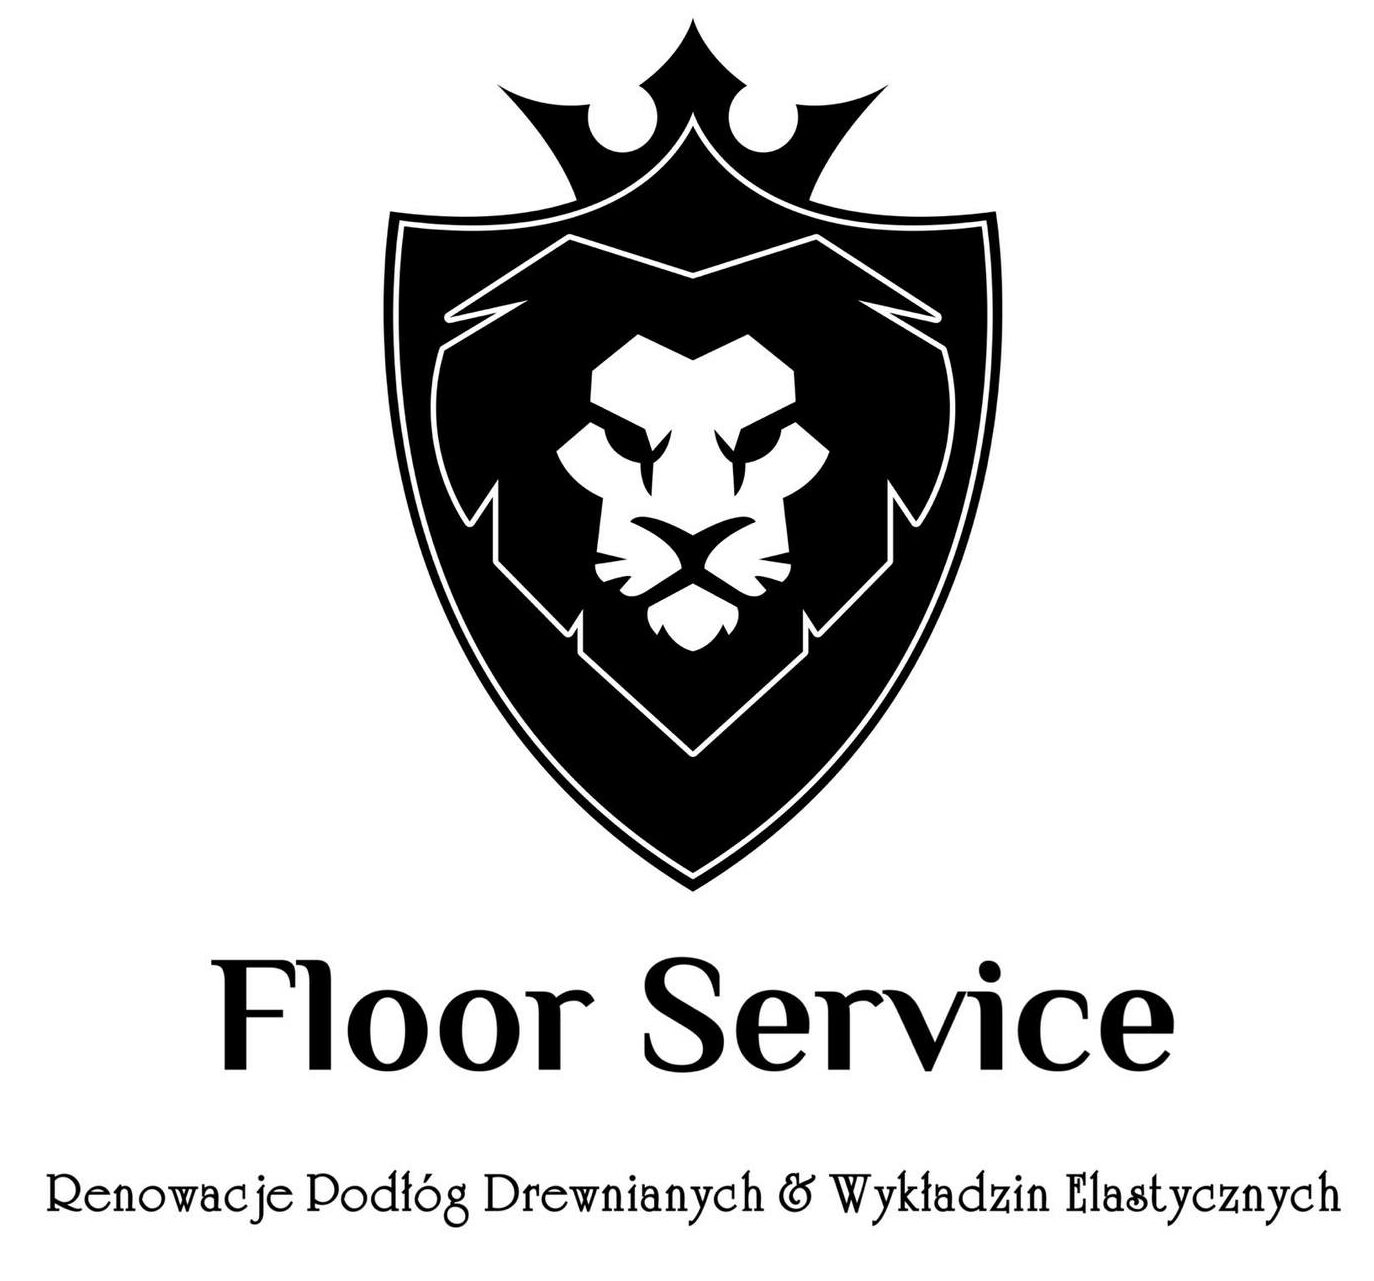 Floor Service Renowacja Podłóg Drewnianych & Wykładzin Elastycznych